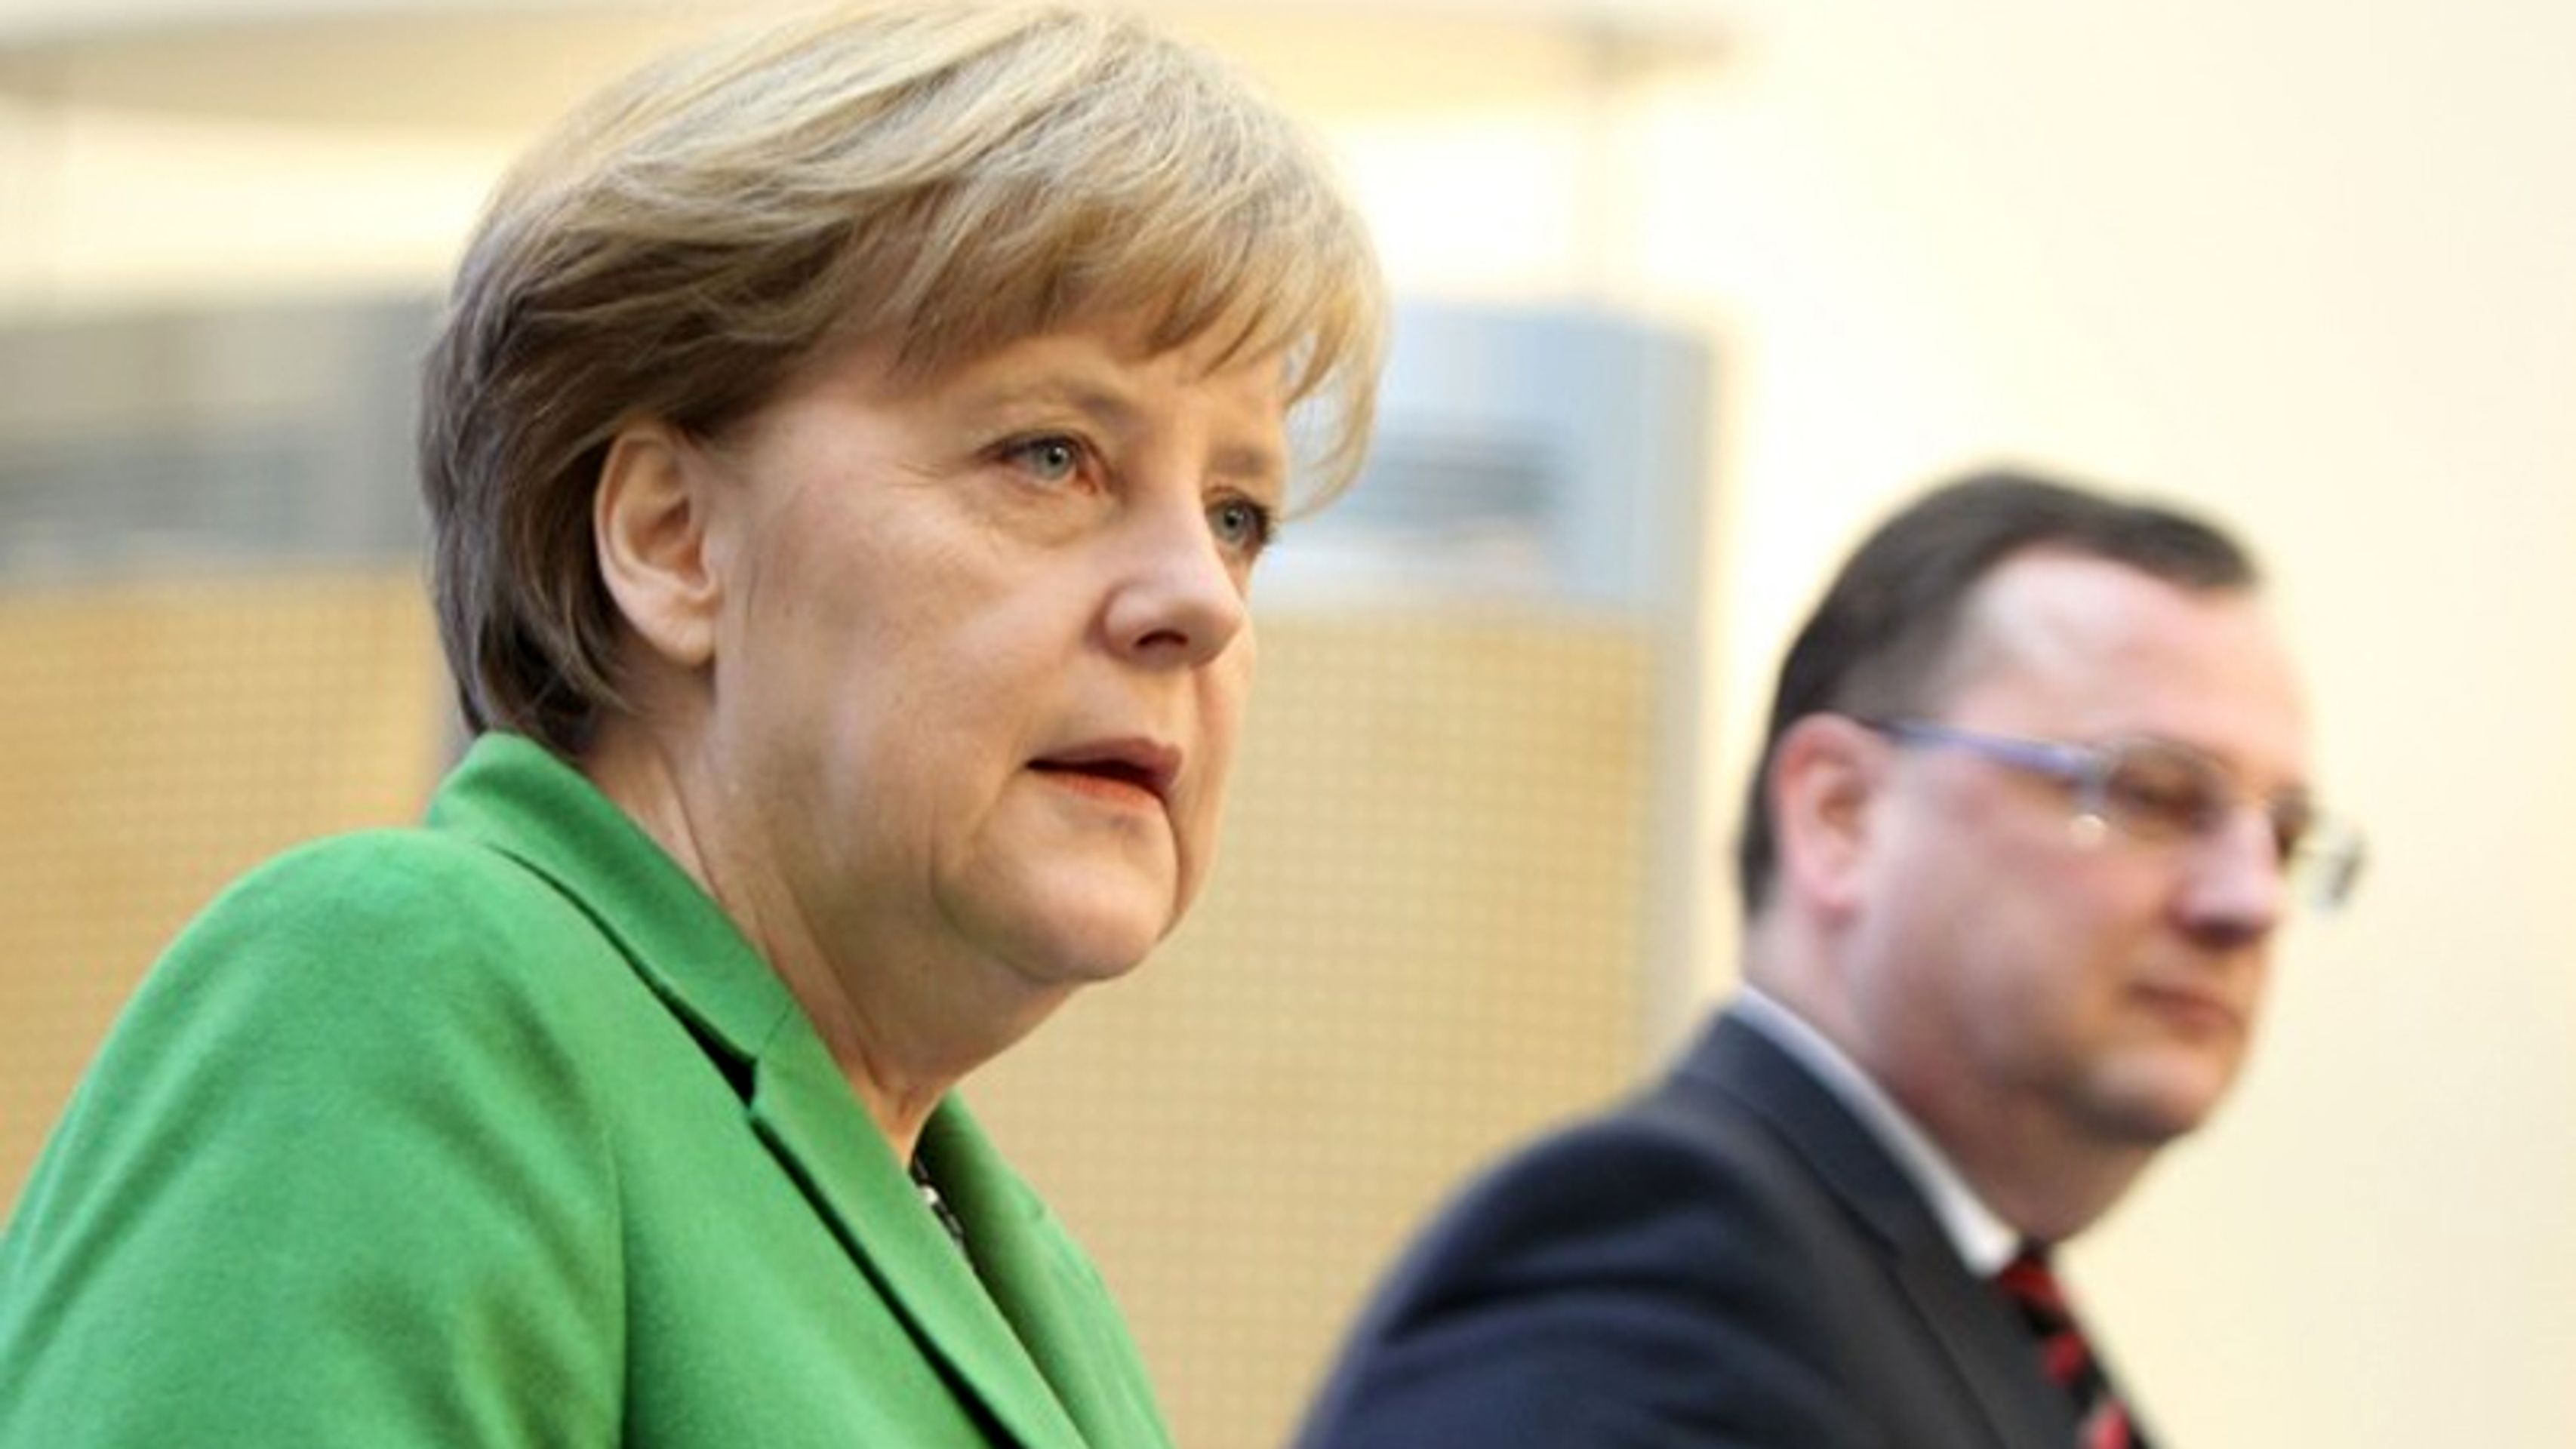 Angela Merkelová v Praze - 4 - Angela Merkelová v Praze (11/11)